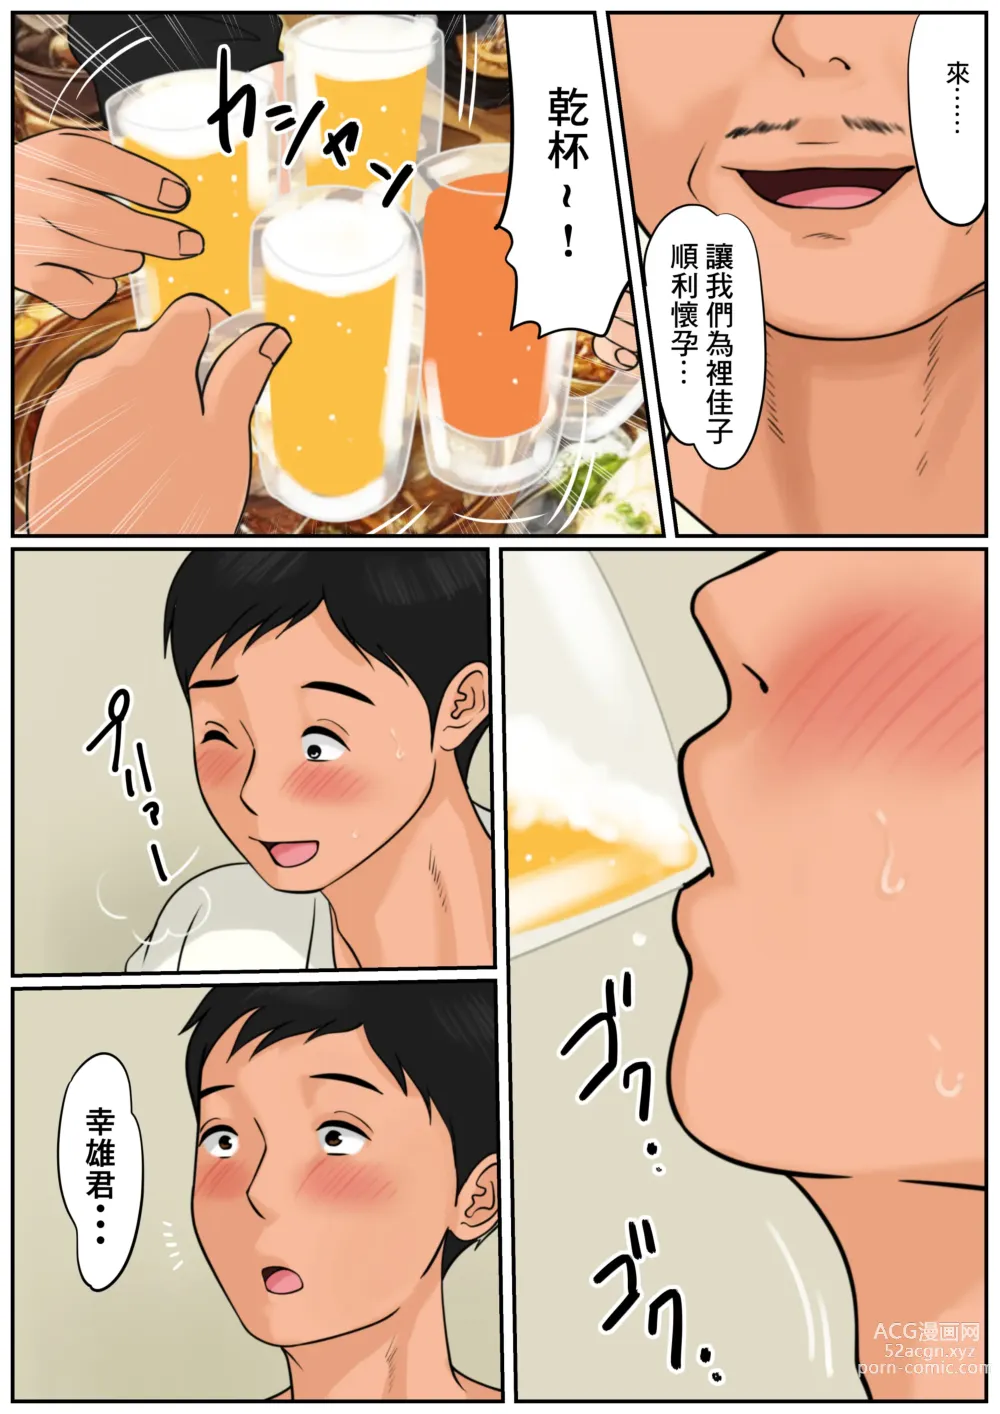 Page 3 of doujinshi 難道你是嫌棄我這個媽媽嗎?